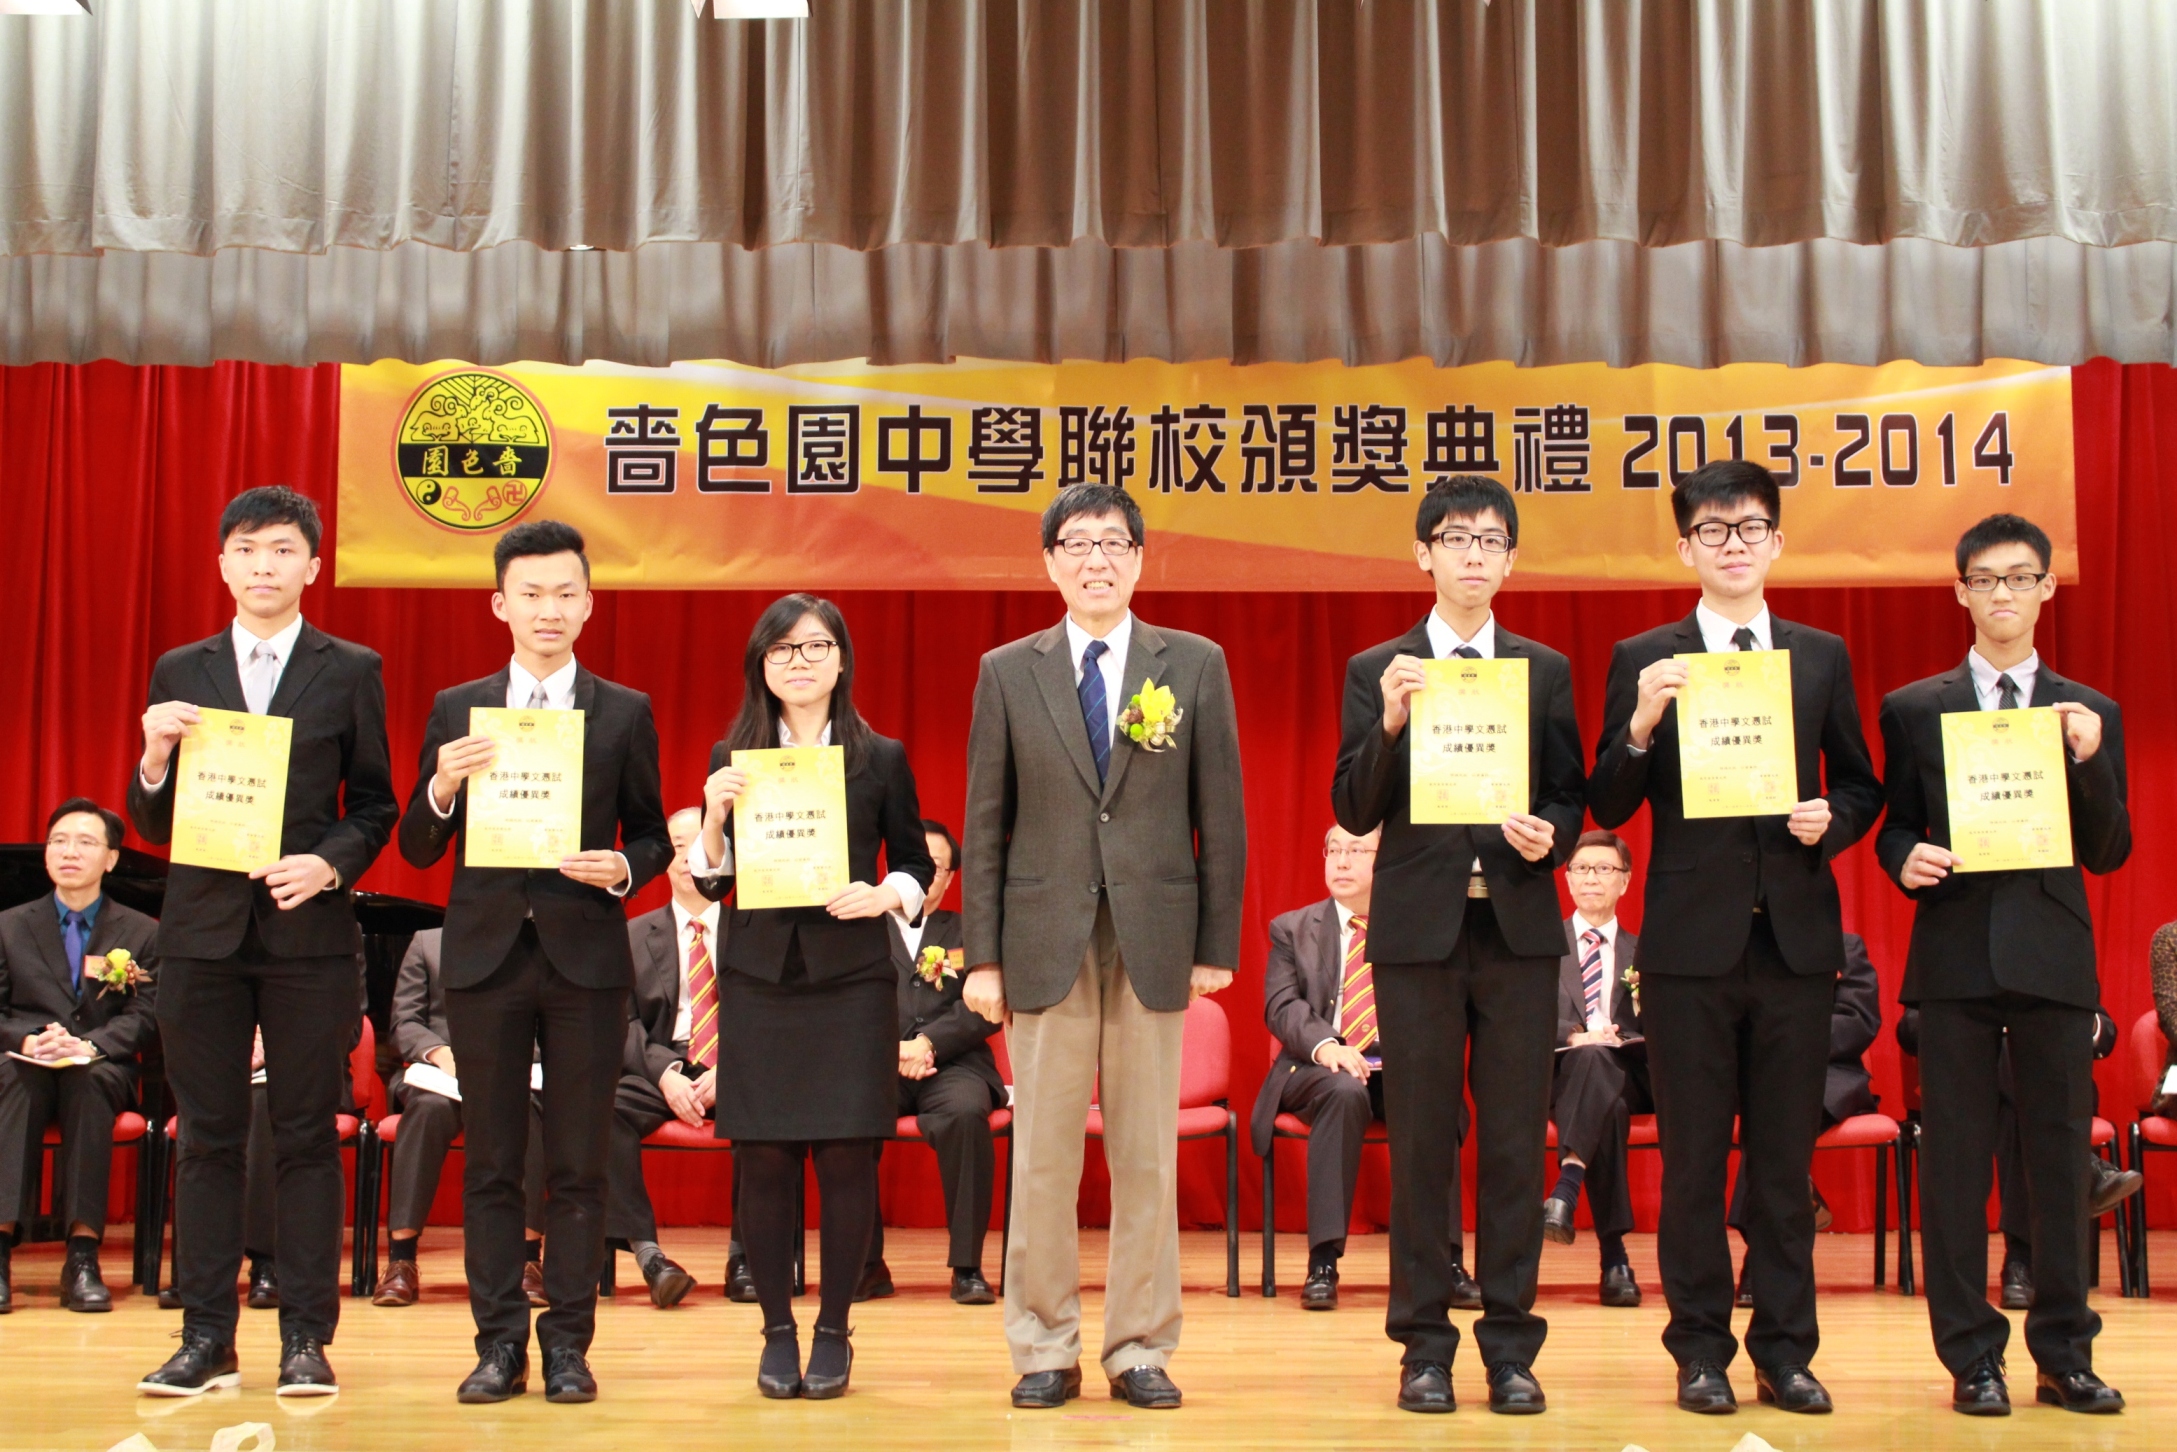 Joint Secondary School Prize Presentation Ceremony